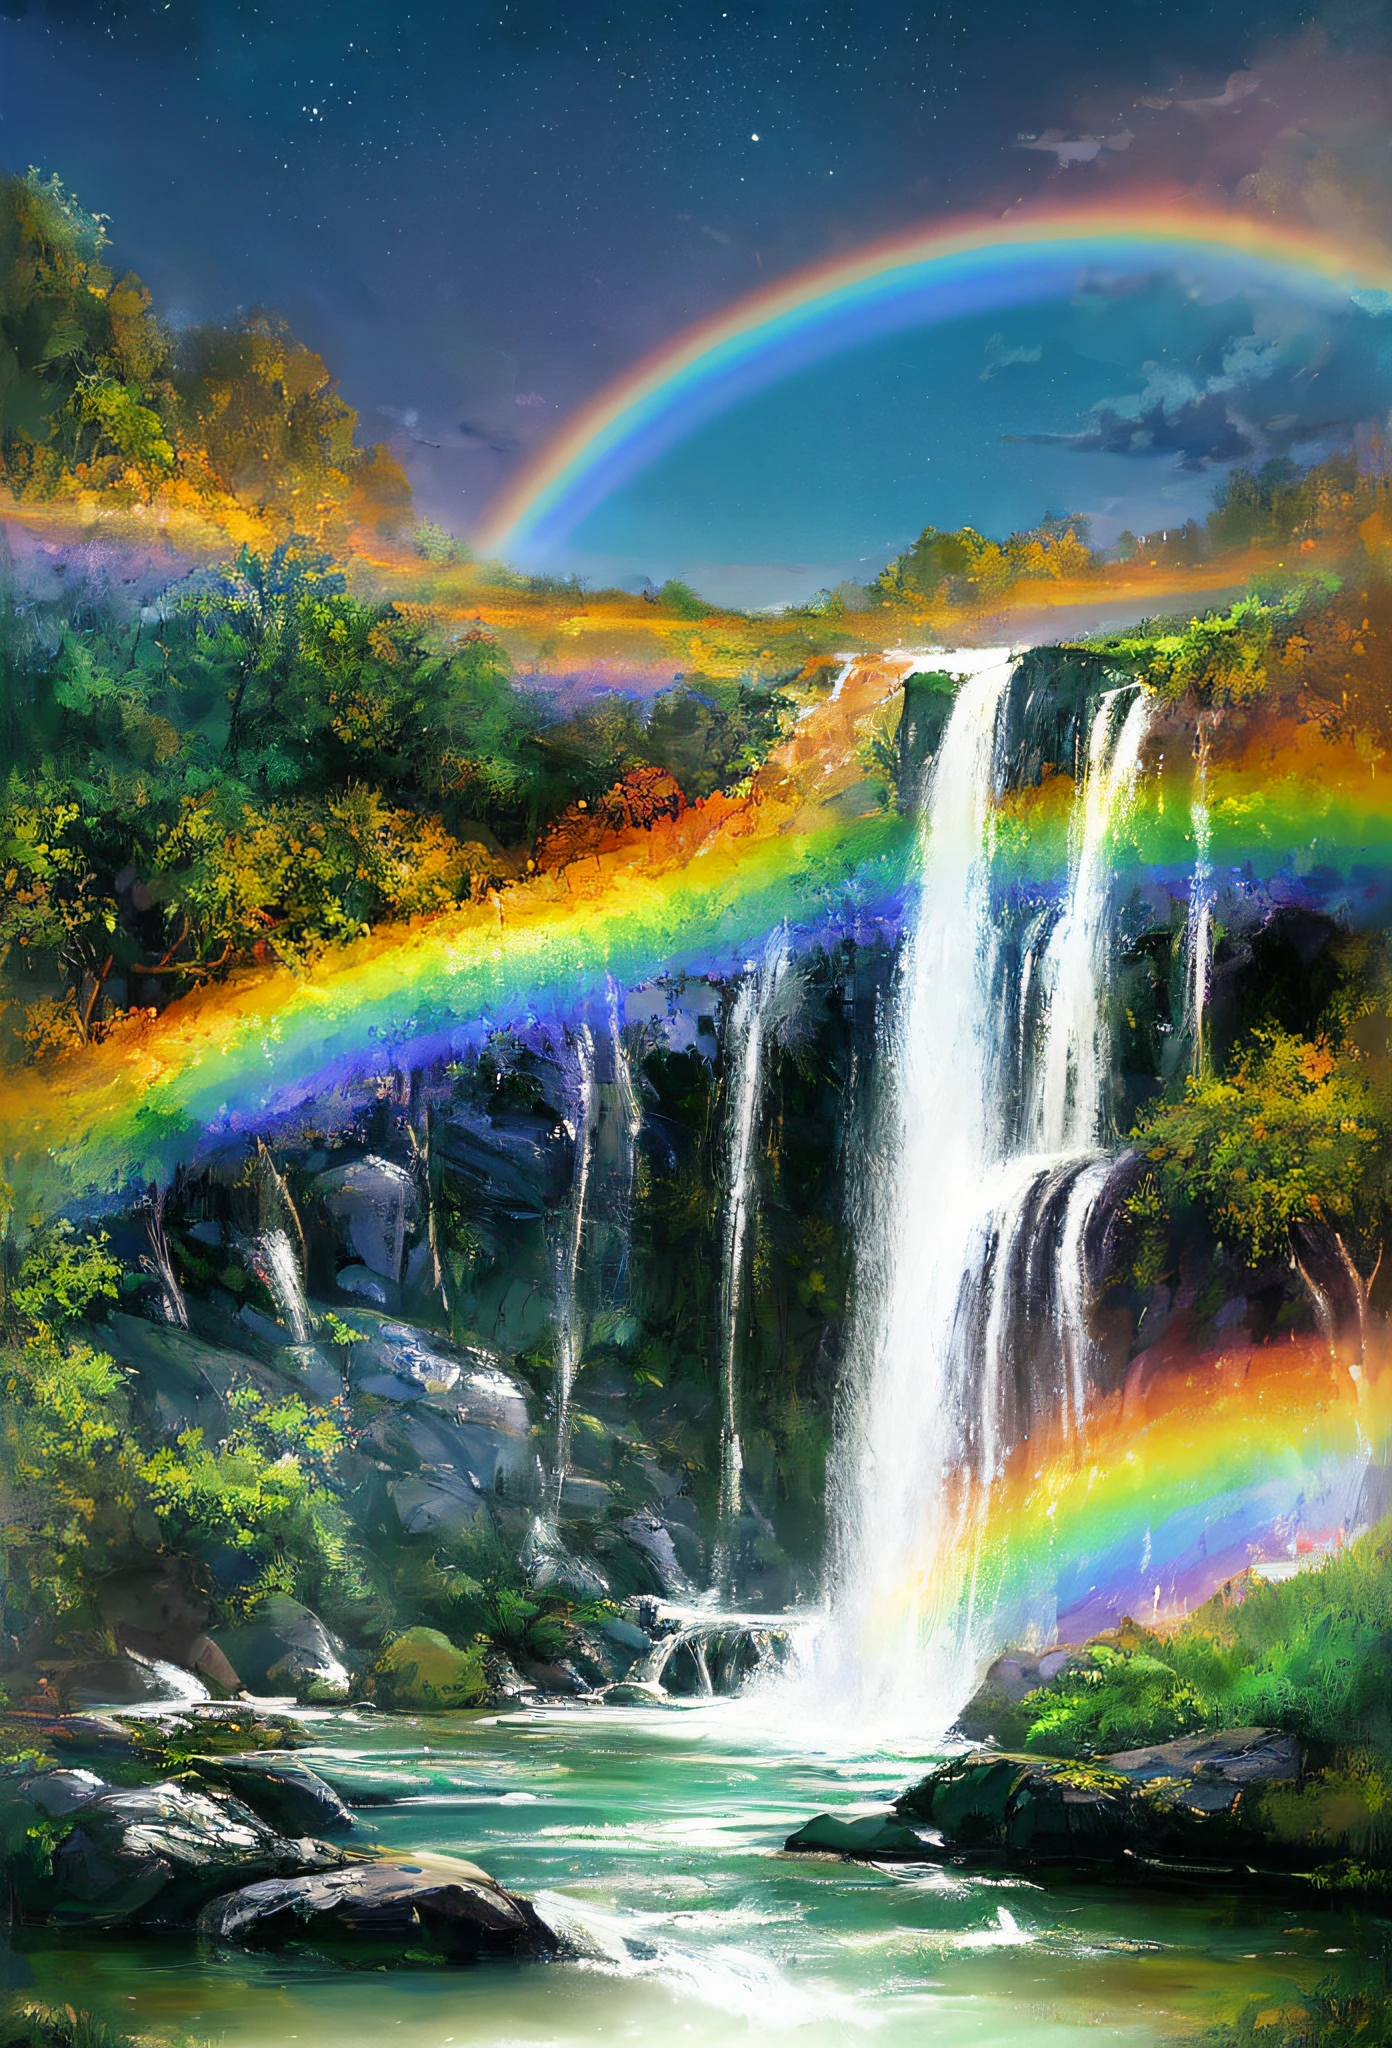 ((beste Qualität)), ((Meisterwerk)), ((ultra-realistisch)), ((Nacht)), preisgekröntes, sanftes Ölgemälde, das auf Artstation im Trend liegt und einen kaskadierenden Regenbogen-Wasserfall zeigt,